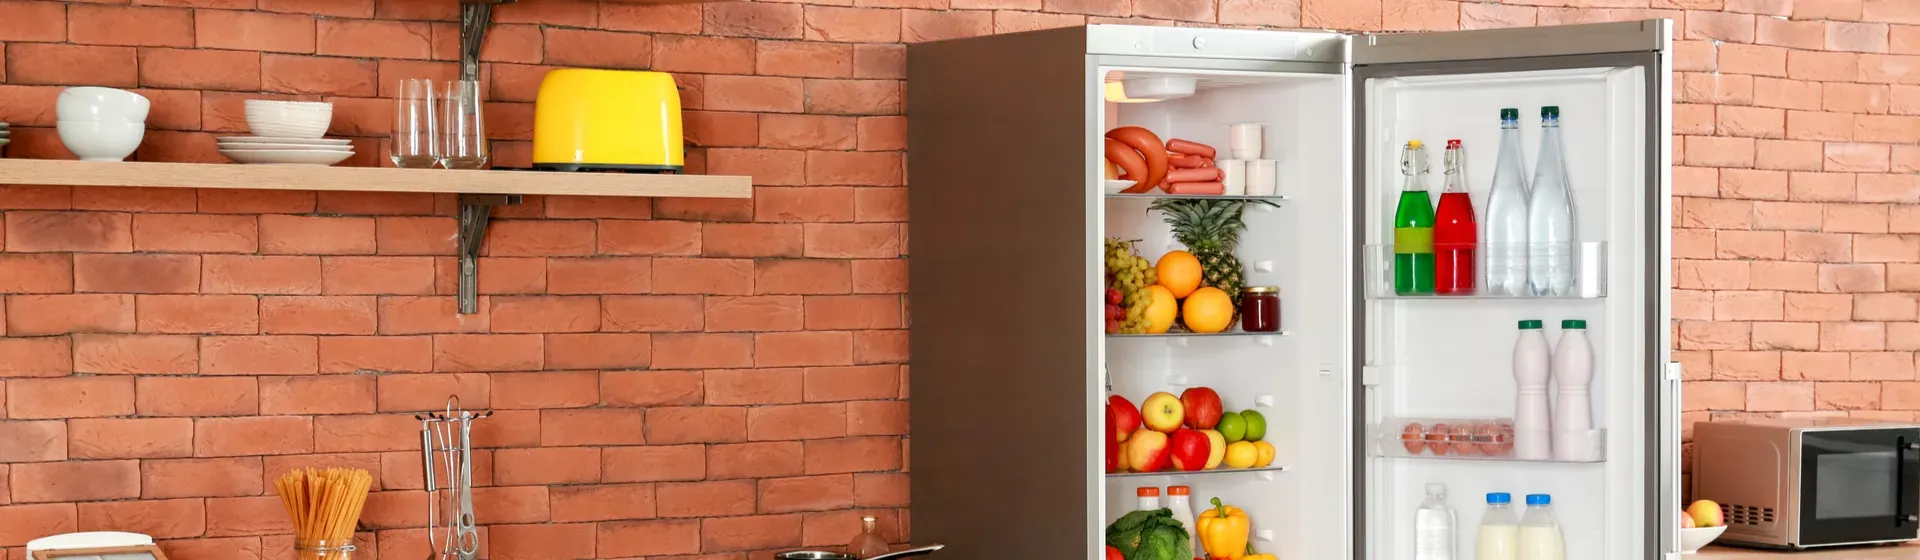 Cozinha com parede de tijolos e geladeira barata inox com a porta aberta e legumes e frutas no interior